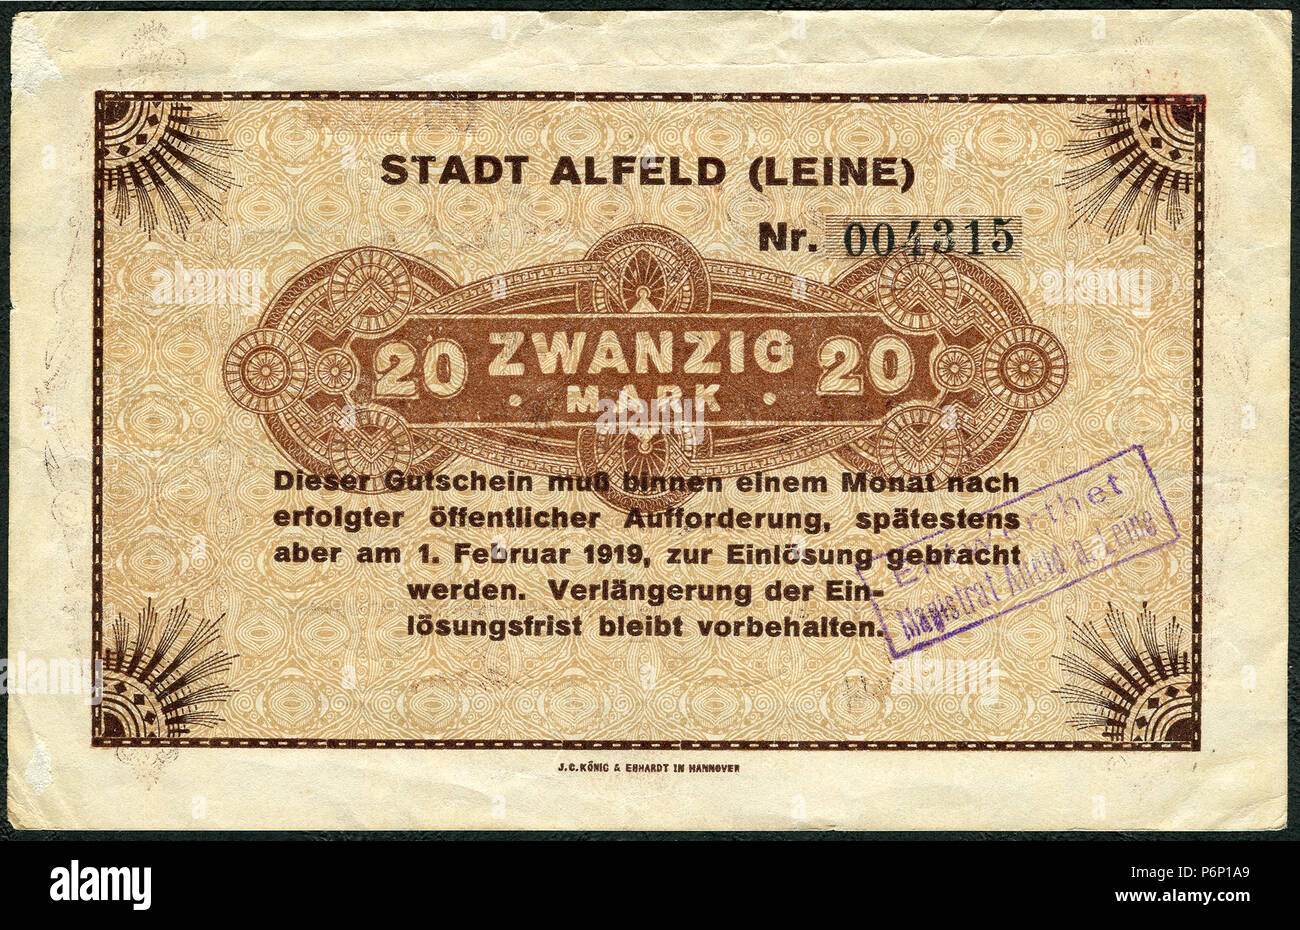 1918-12-01 Stadt Alfeld (Leine) Gutschein über 20 Mark ... am 1. Februar 1919 zur Einlösung ... J. C. König & Ebhardt in Hannover, Entwertet Stempel. Stock Photo